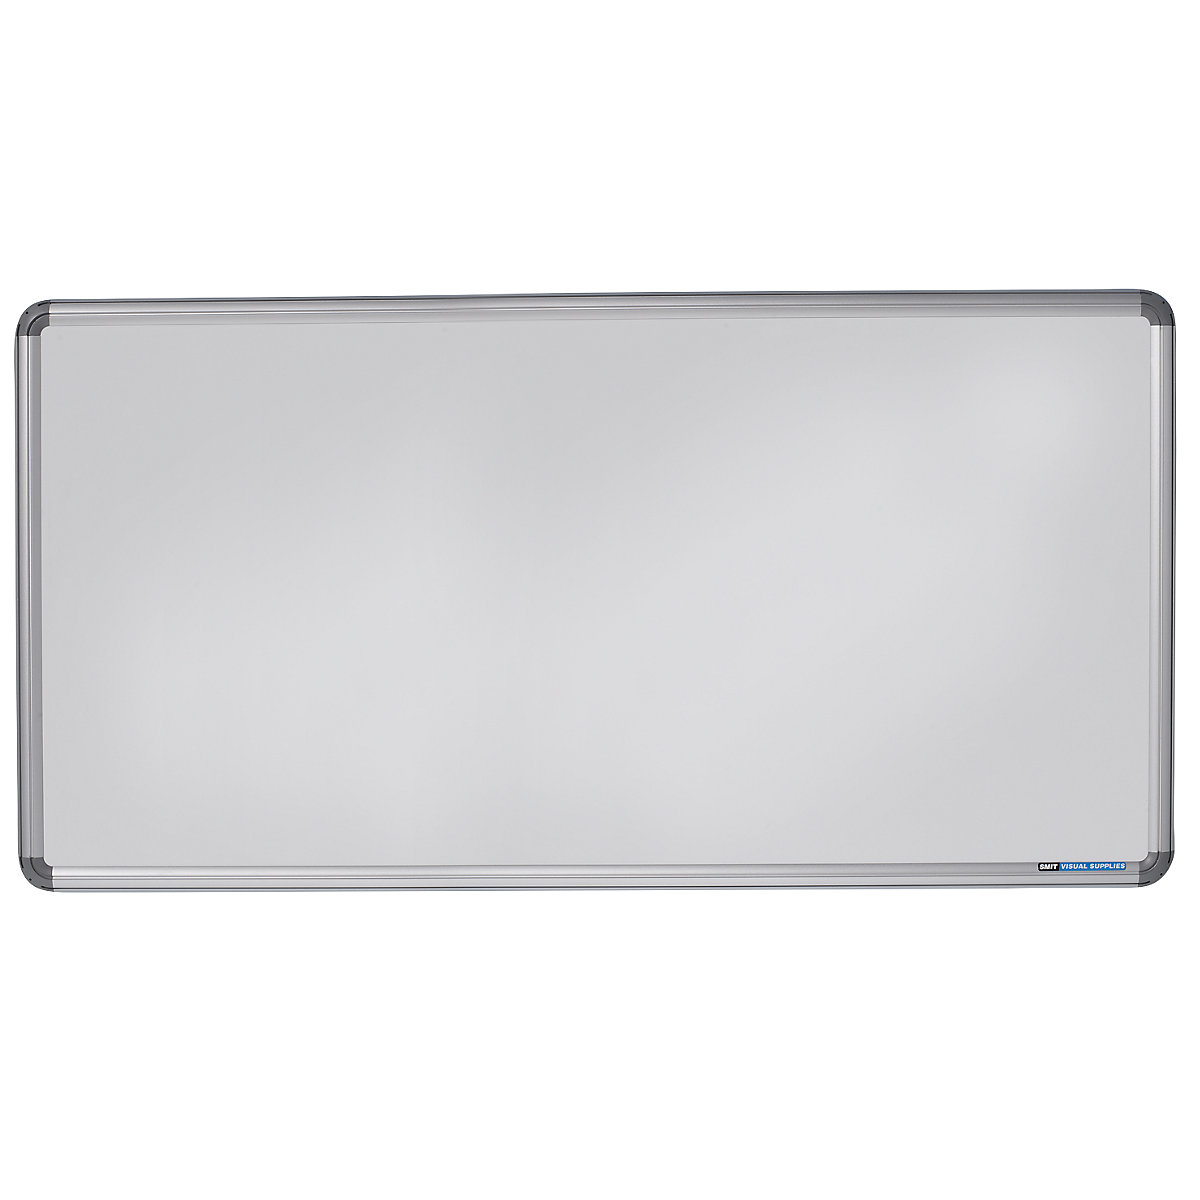 EUROKRAFTpro – Elegantní nástěnná tabule, ocelový plech, lakováno, š x v 2400 x 1200 mm, bílá